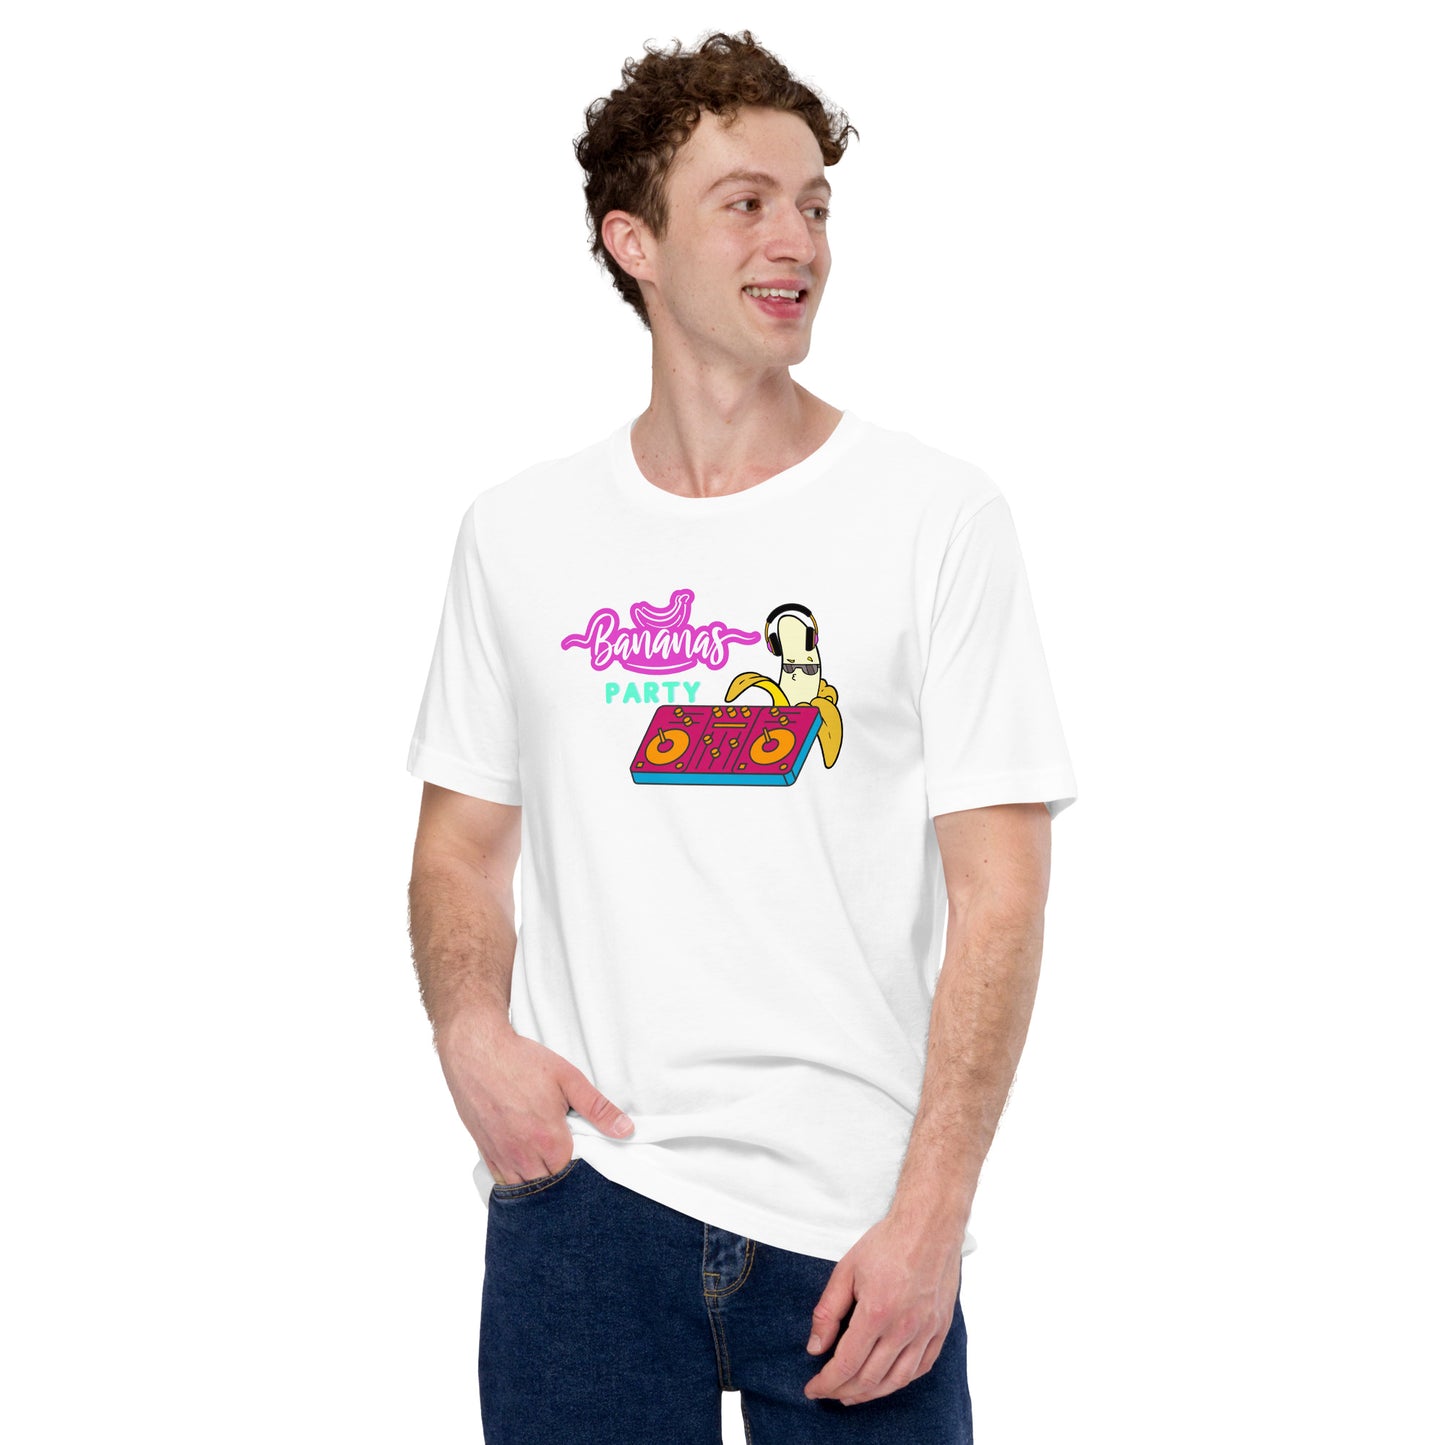 Camiseta blanca de hombre con divertido diseño de un plátano DJ pinchando música